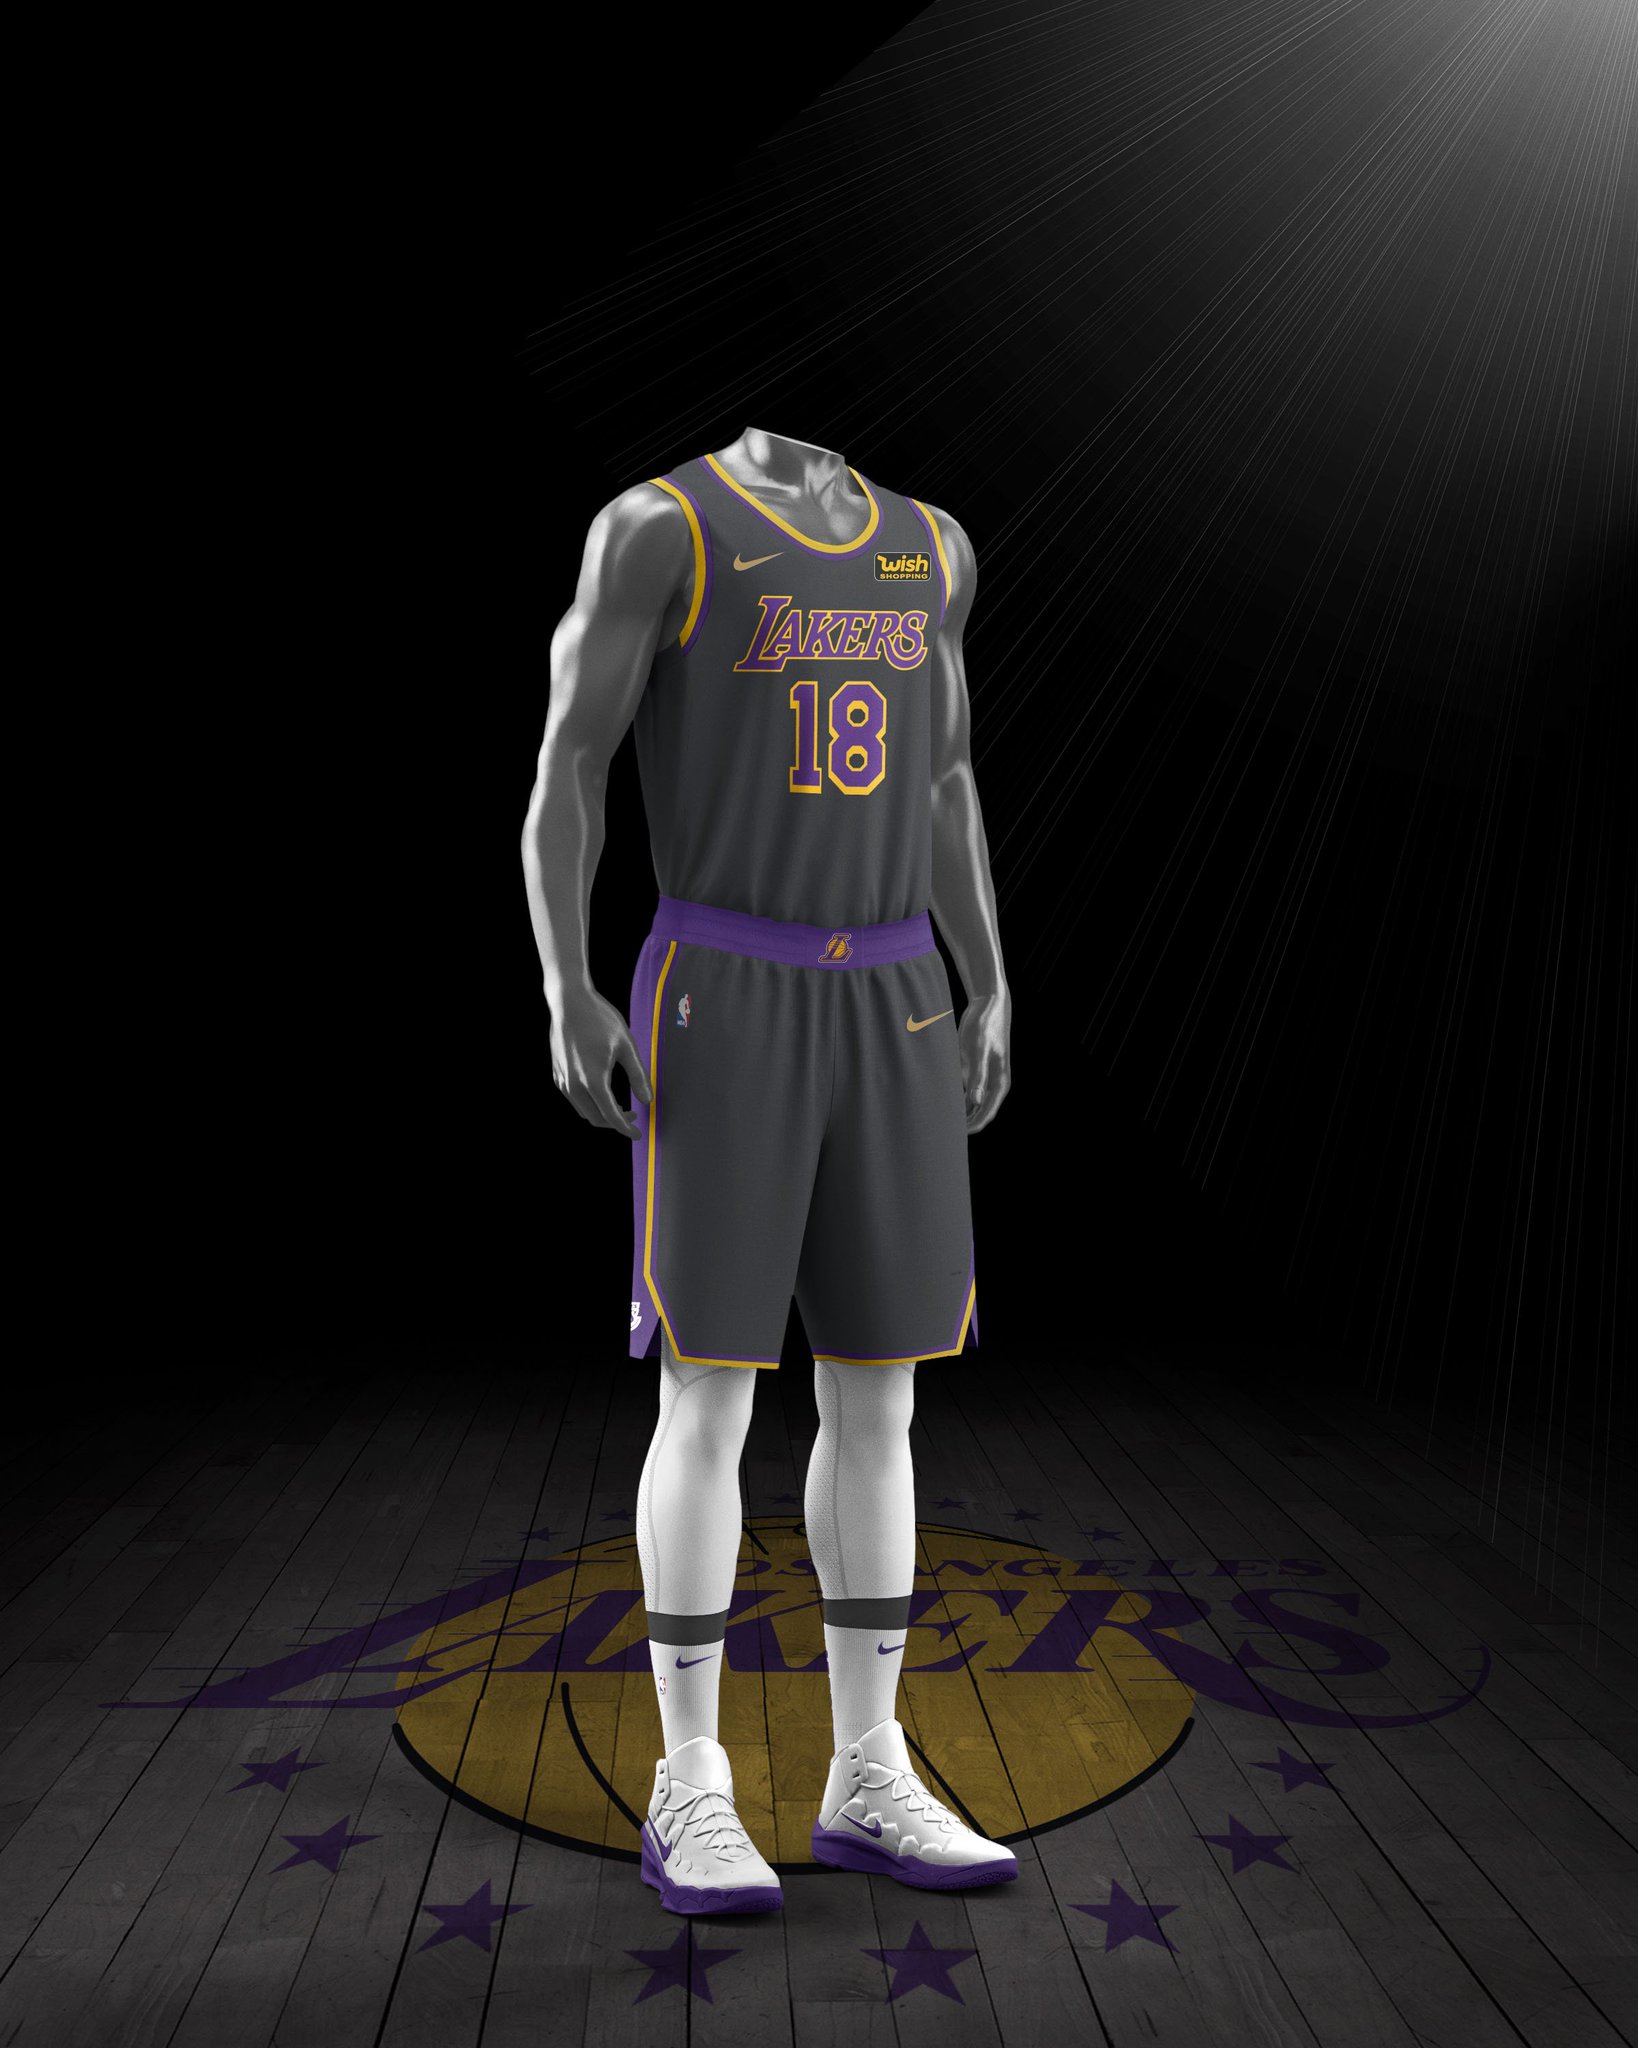 inventar muñeca Mezquita Twitter 上的 NLB 🐍 (3-2)："¡Primer vistazo al uniforme EARNED de los Lakers!  👀 Parece haberse filtrado la camiseta que faltaba por revelar, la que Nike  diseña para los equipos que avanzaron a